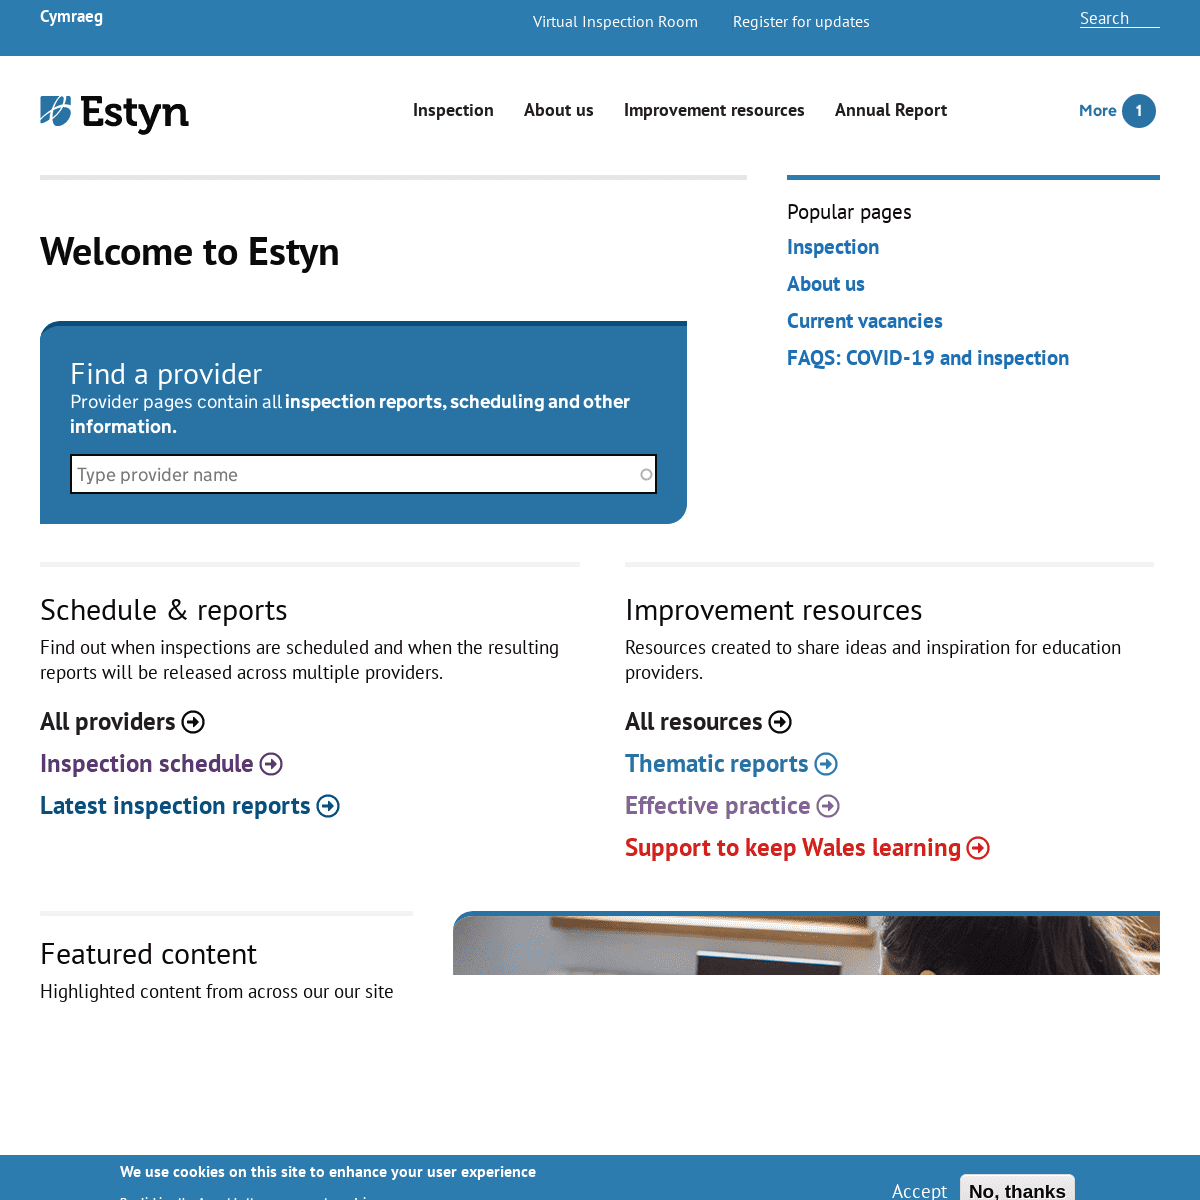 A complete backup of https://estyn.gov.uk